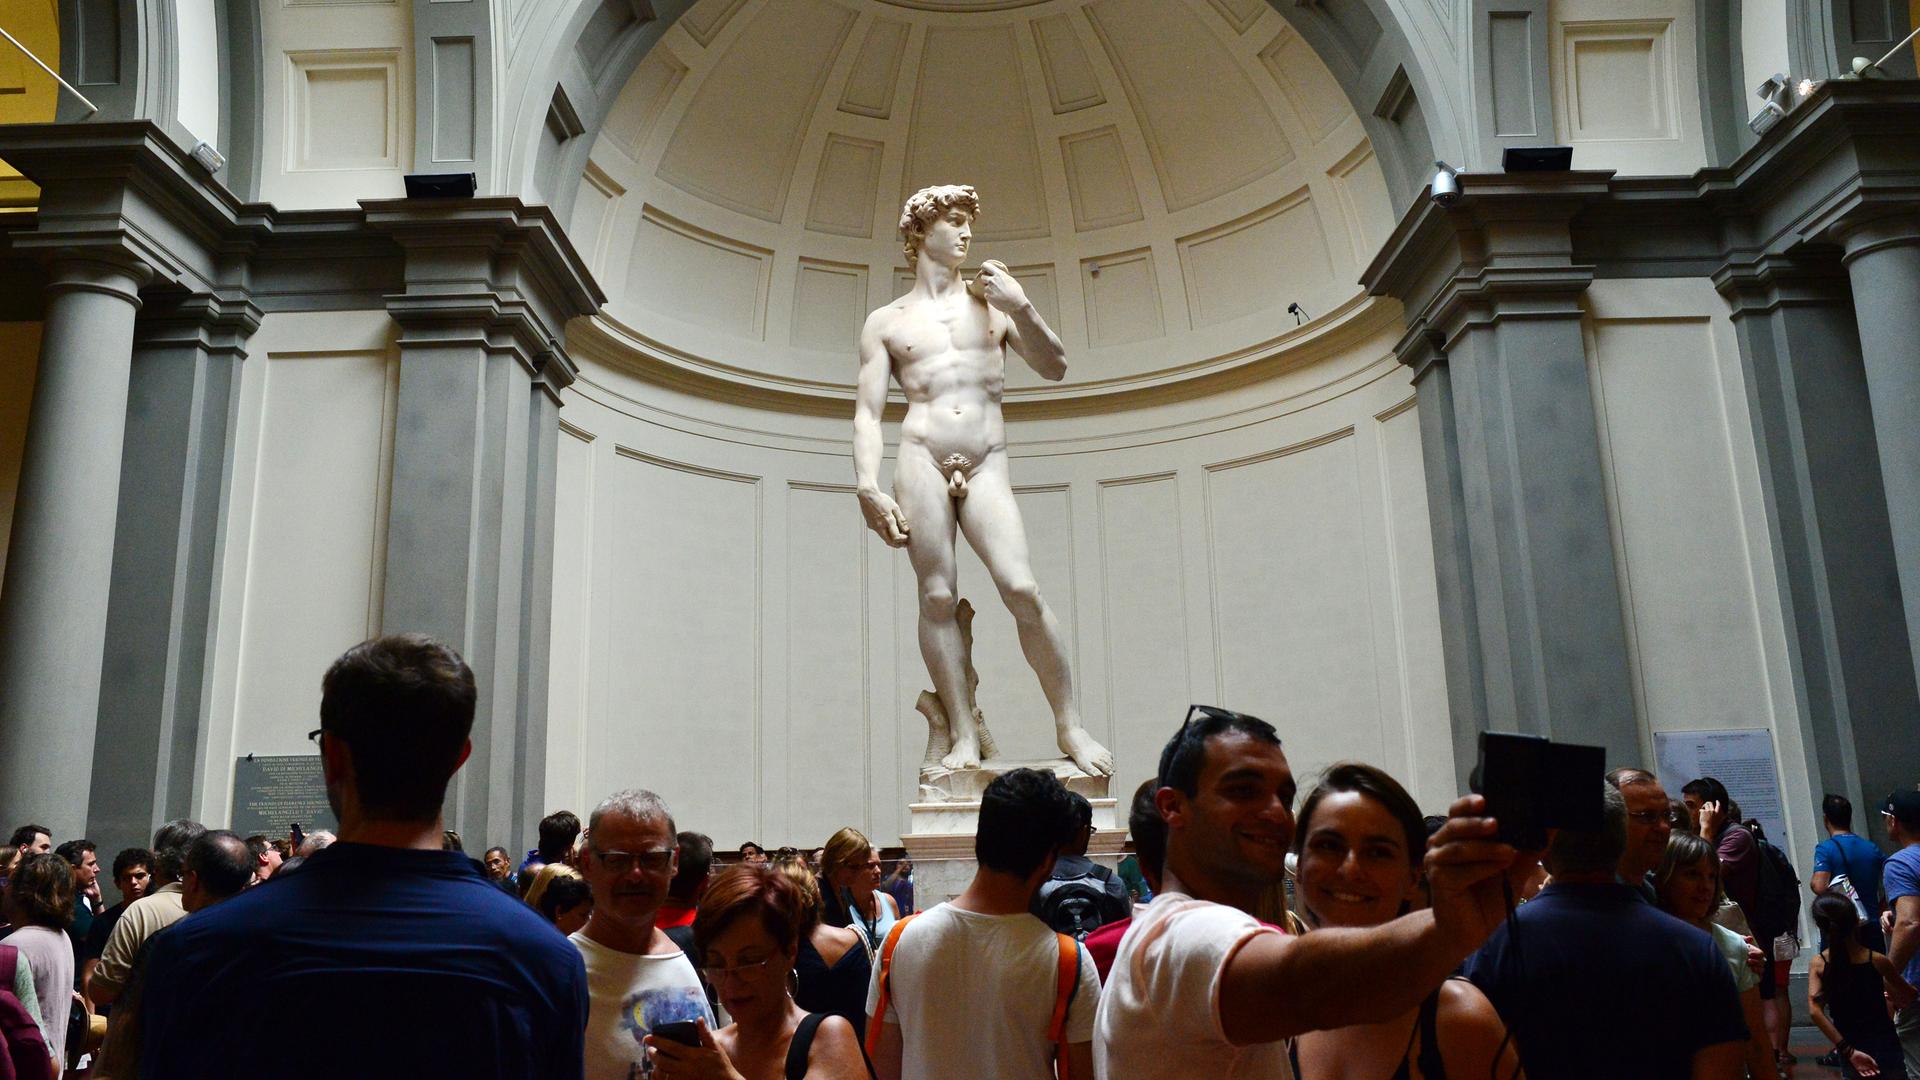 Das Foto Zeigt die David-Statue von Michelangelo in der Galleria dell Accademia in Florenz. Vor der Statue stehen viele Besucher.